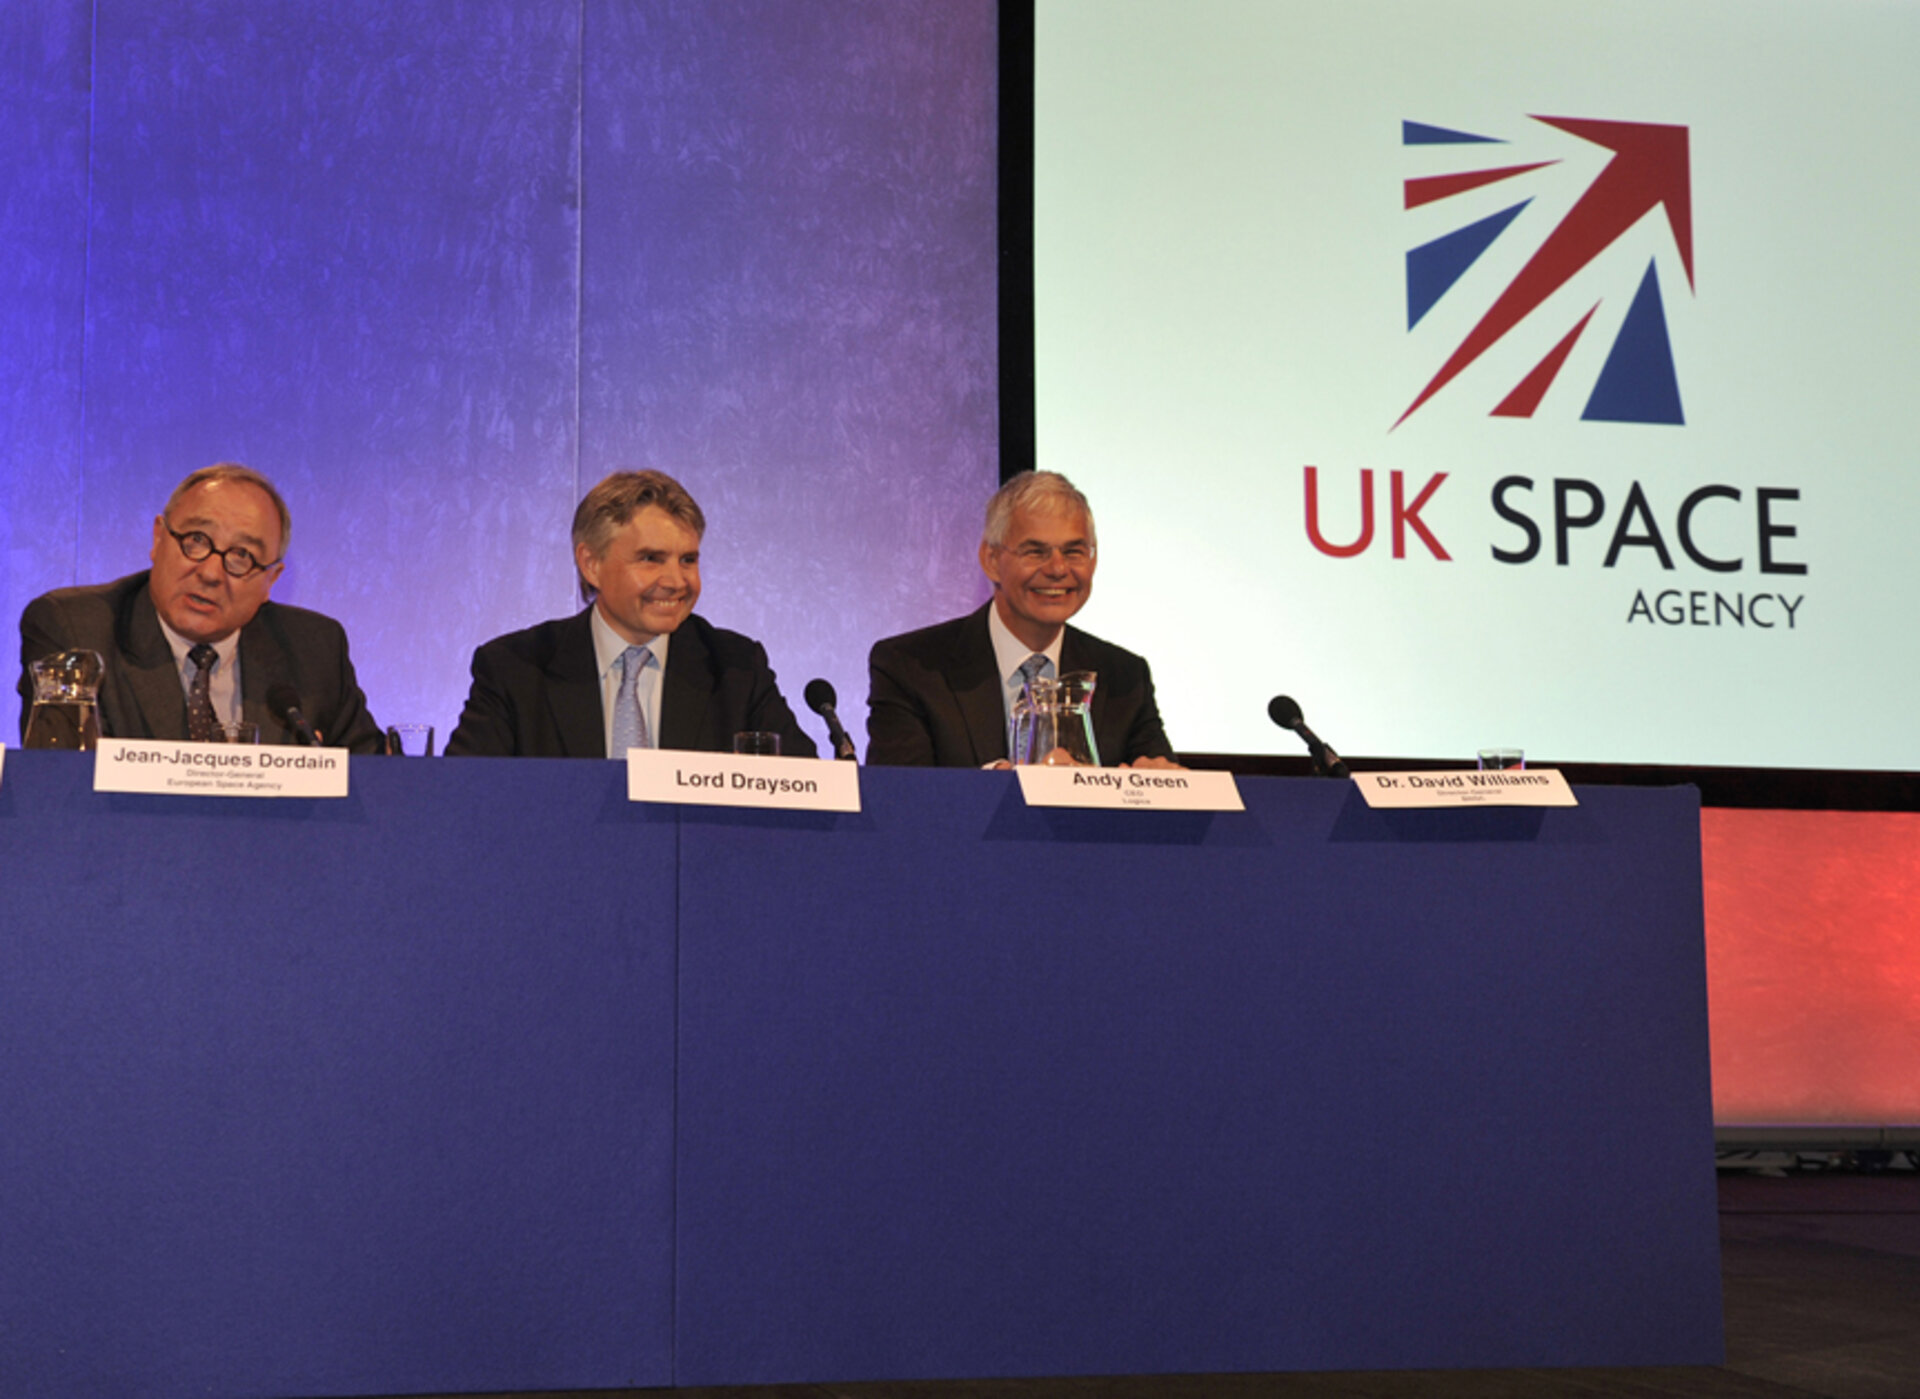 Oznámení o založení nové britské kosmické agentury 23. března.